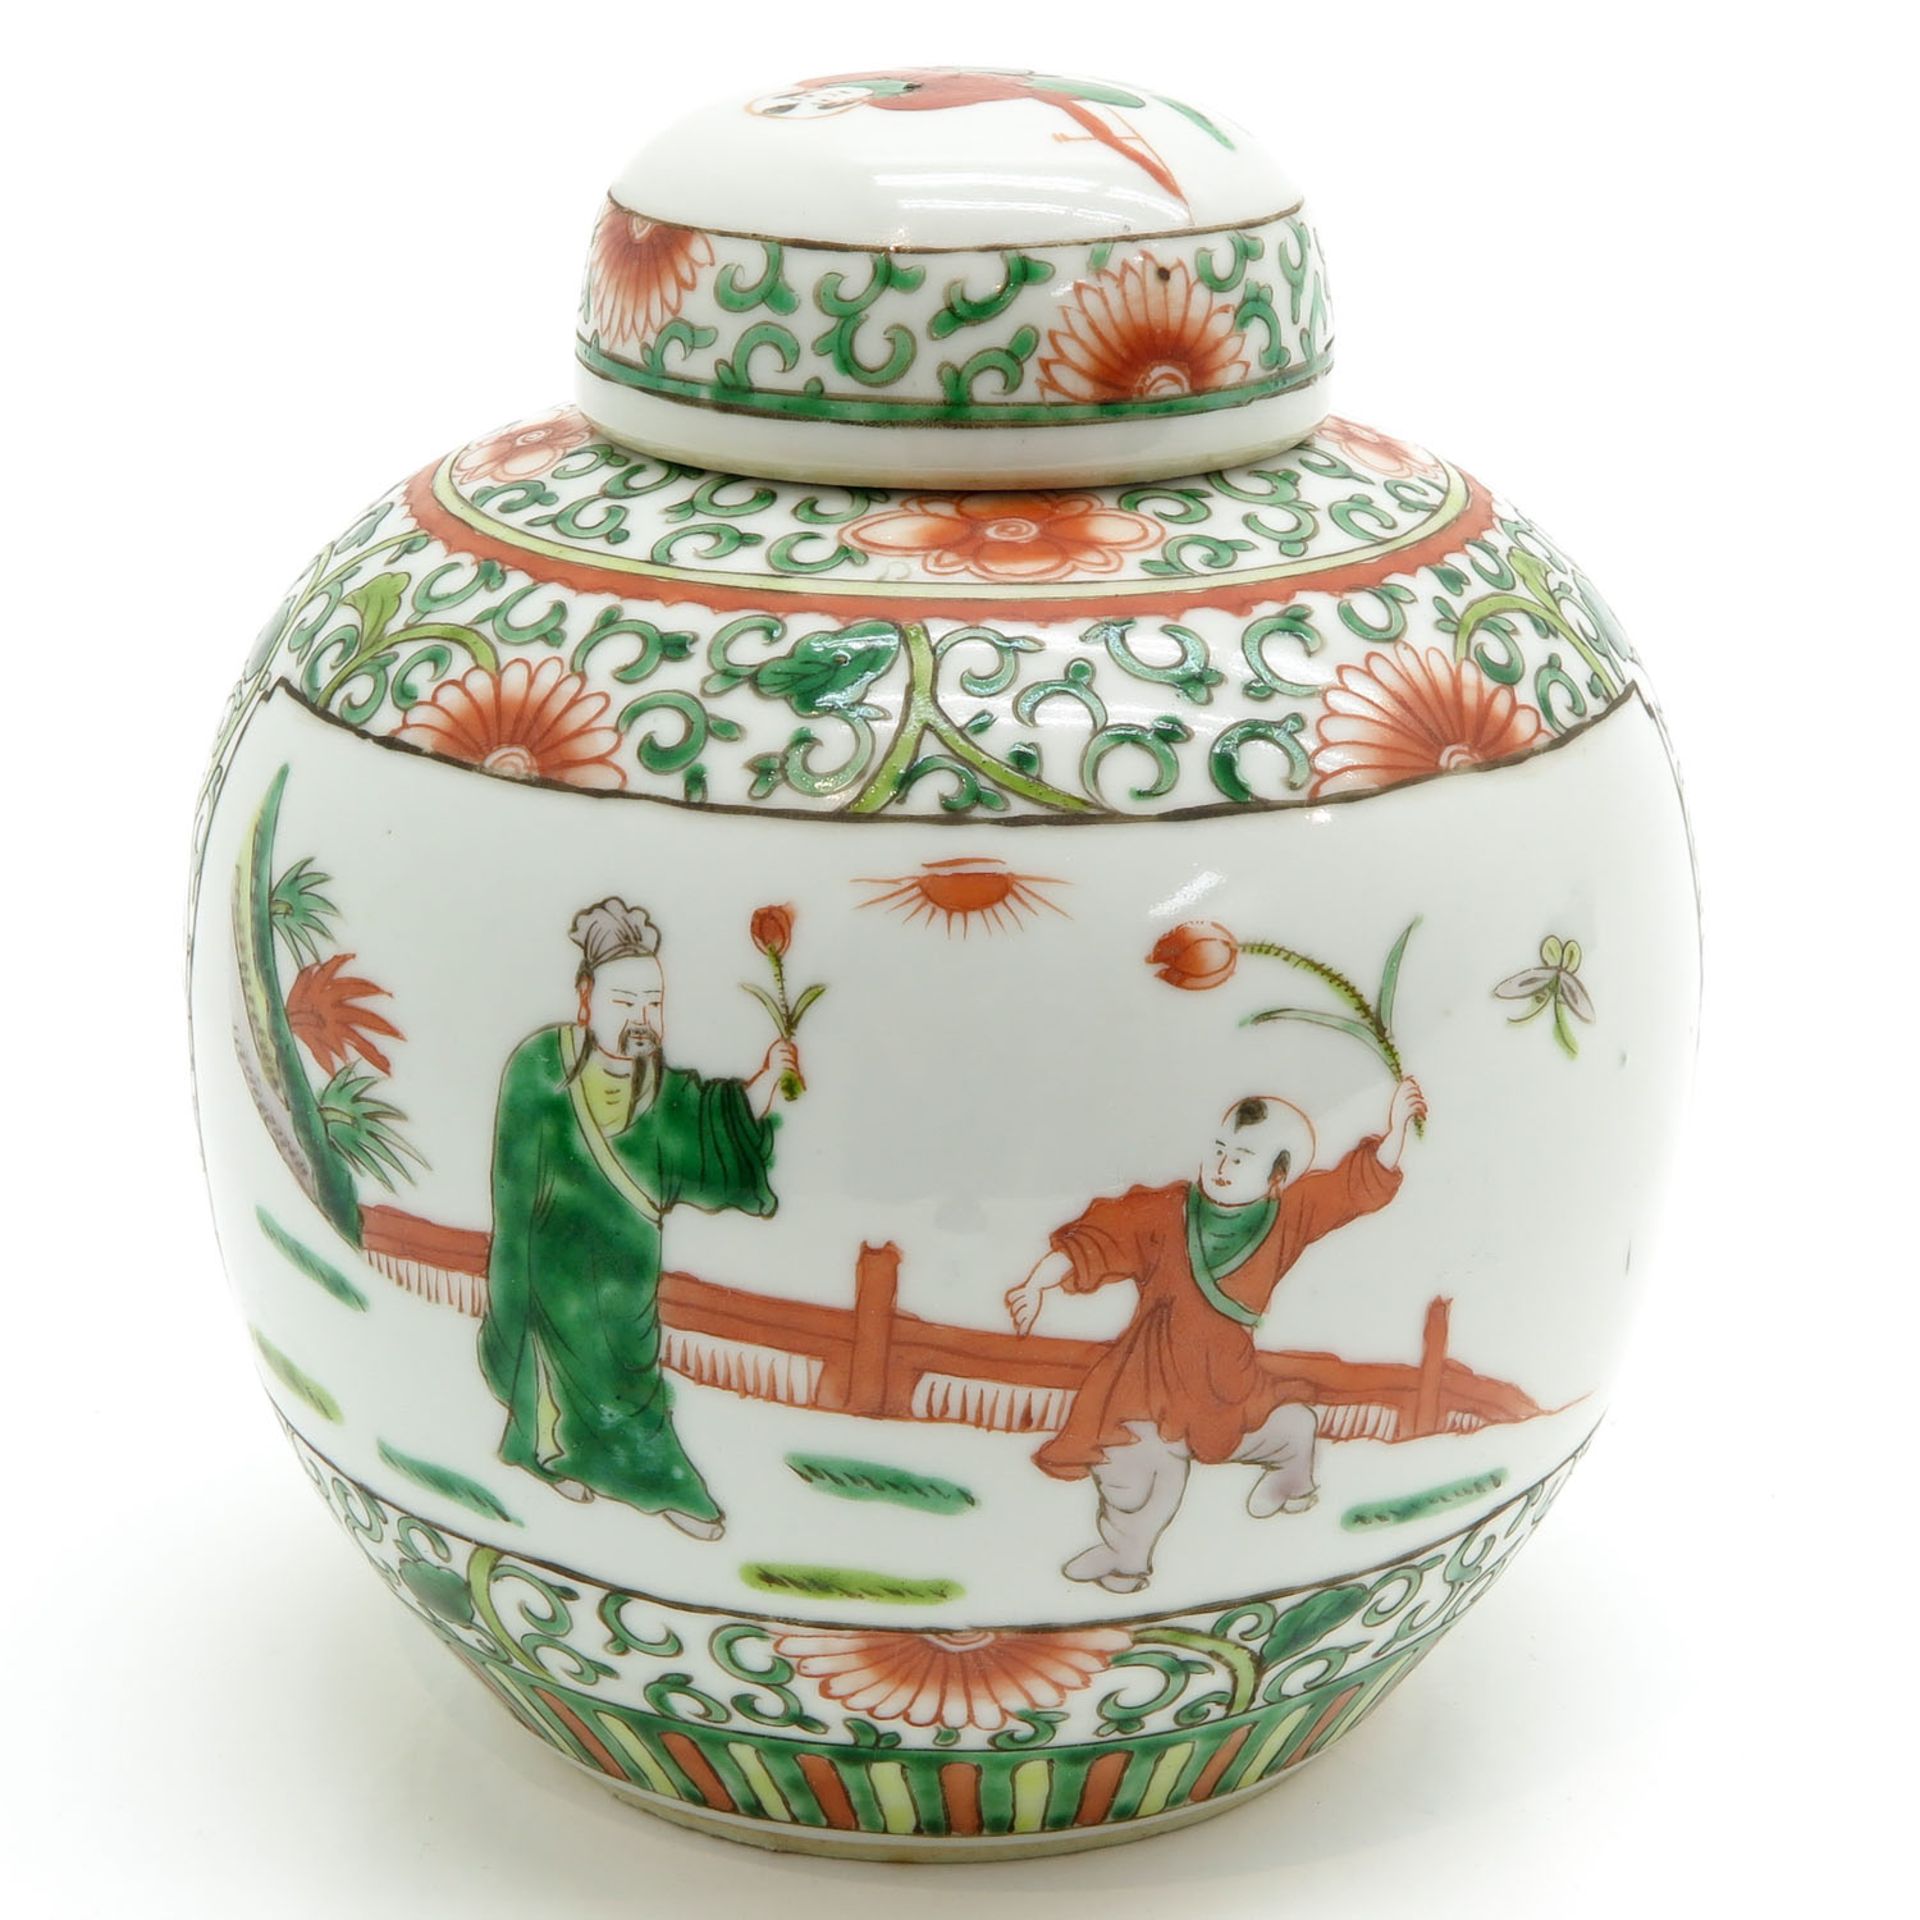 China Porcelain Lidded Jar